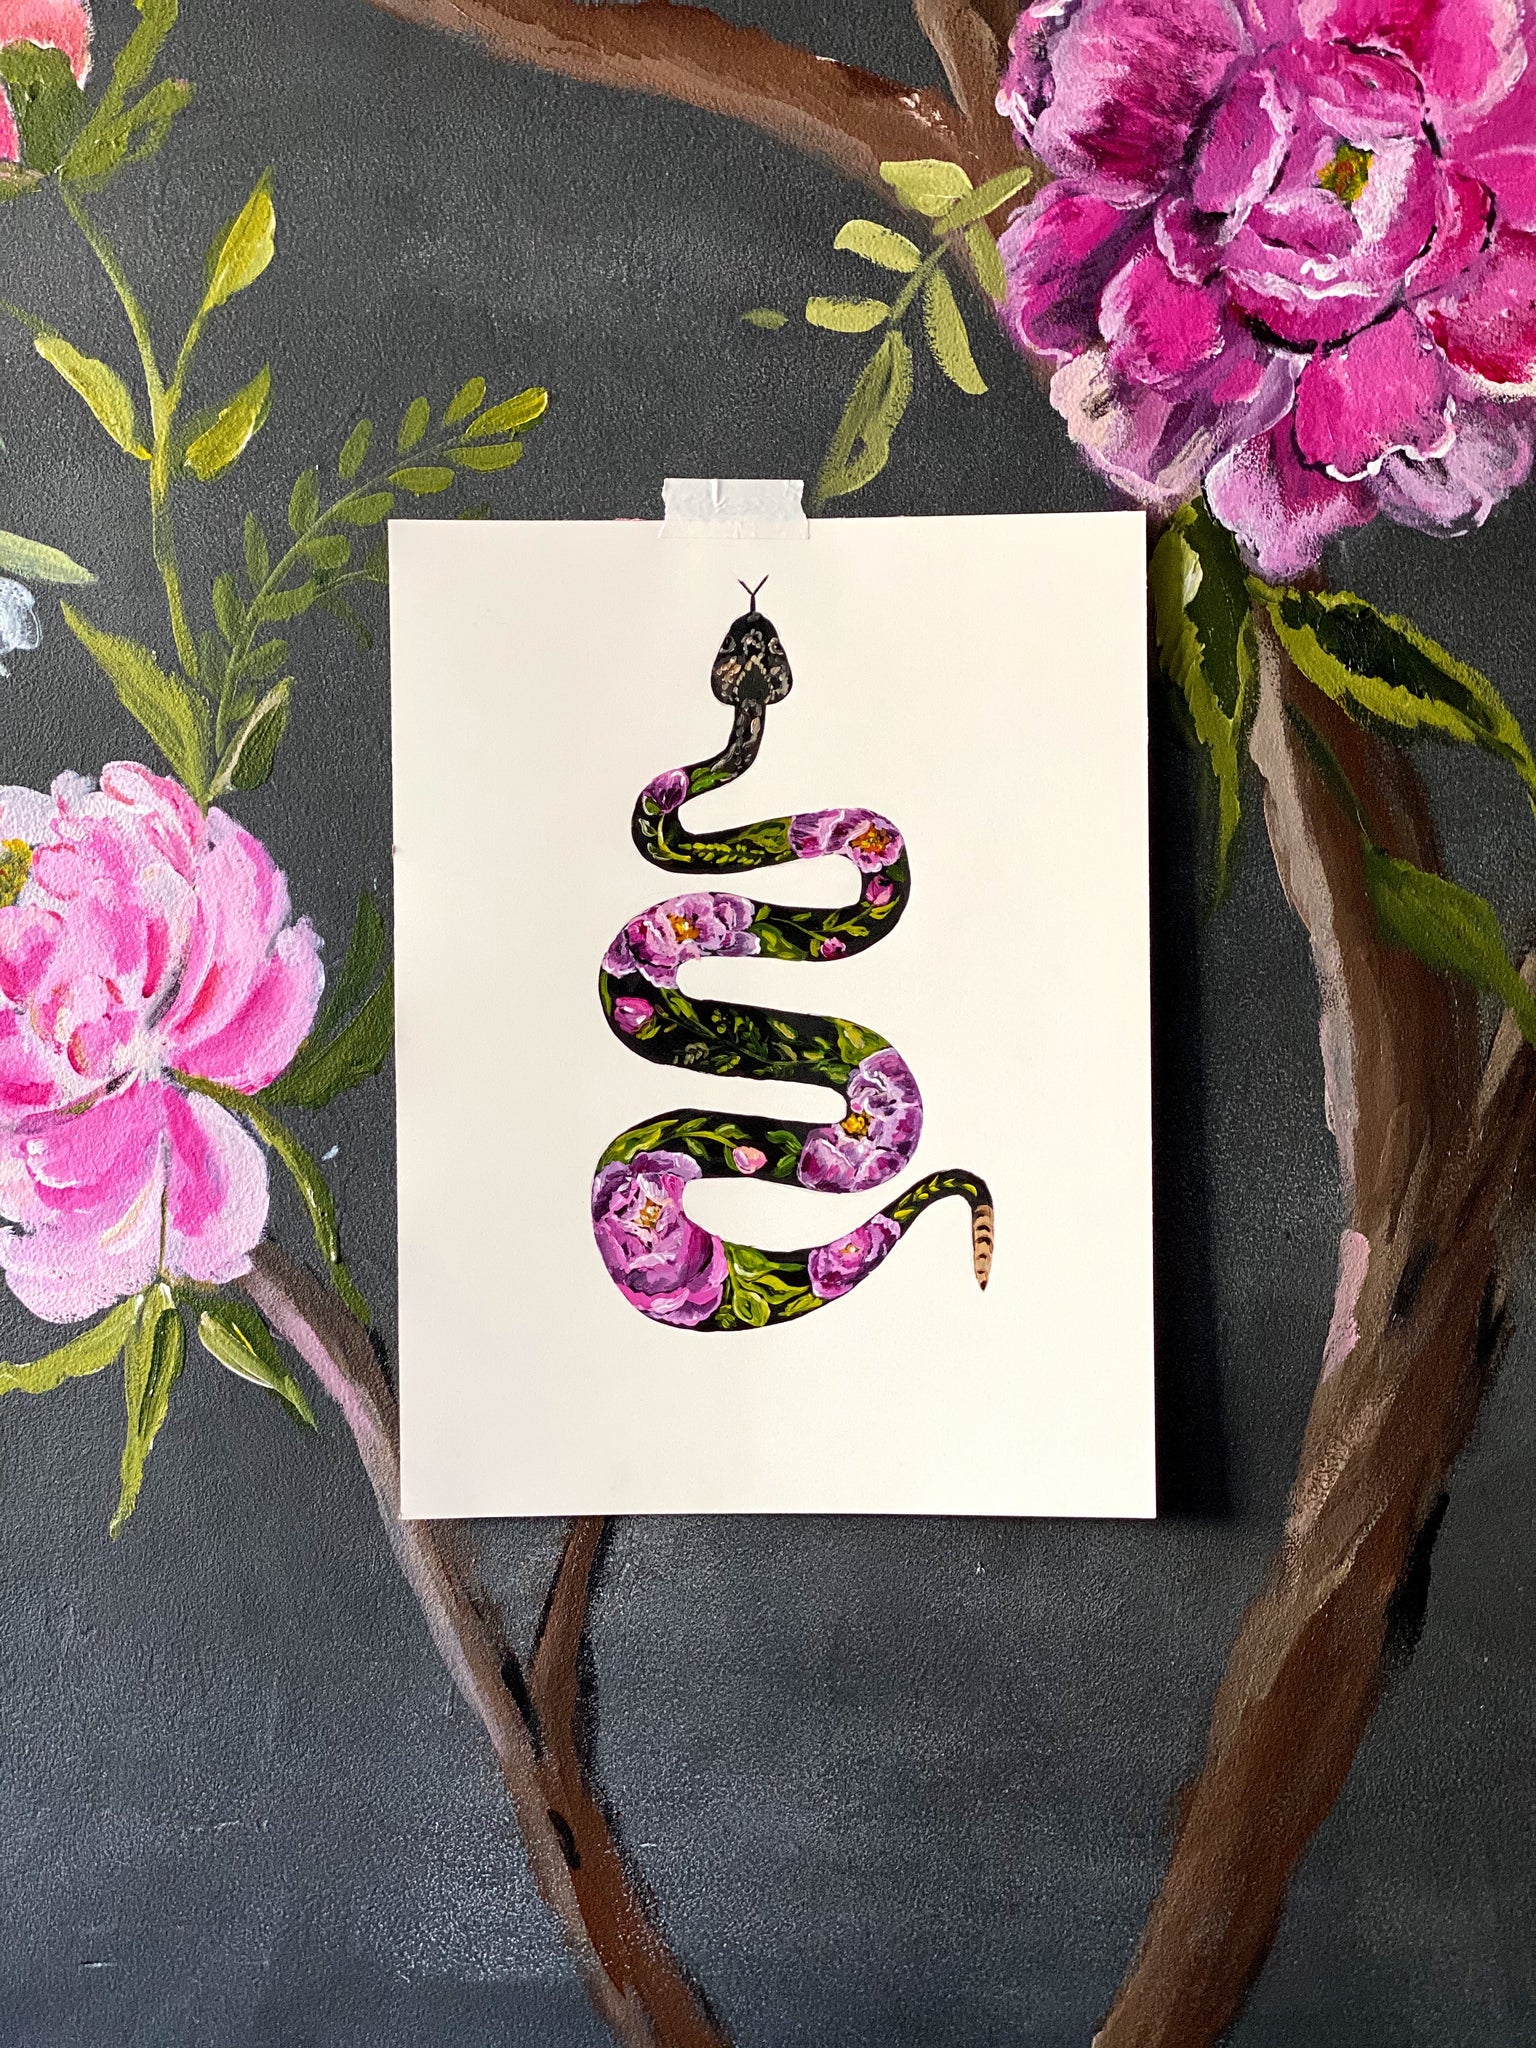 Bari J. Serpent floral. Collection de femmes féroces